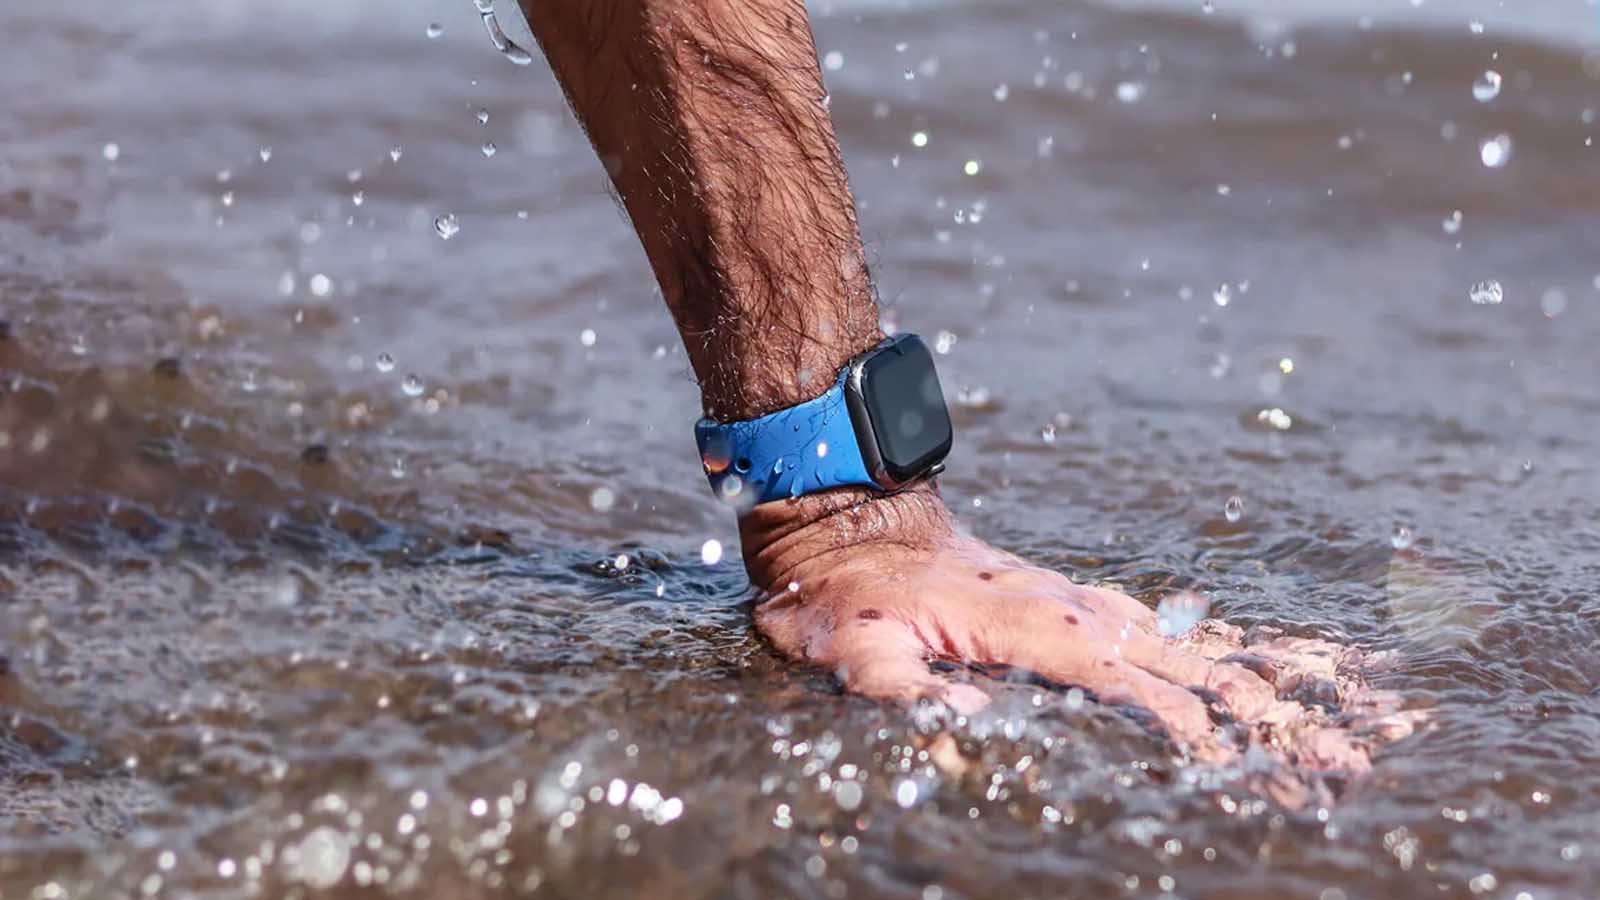 بهترین ساعت هوشمند ضد آب